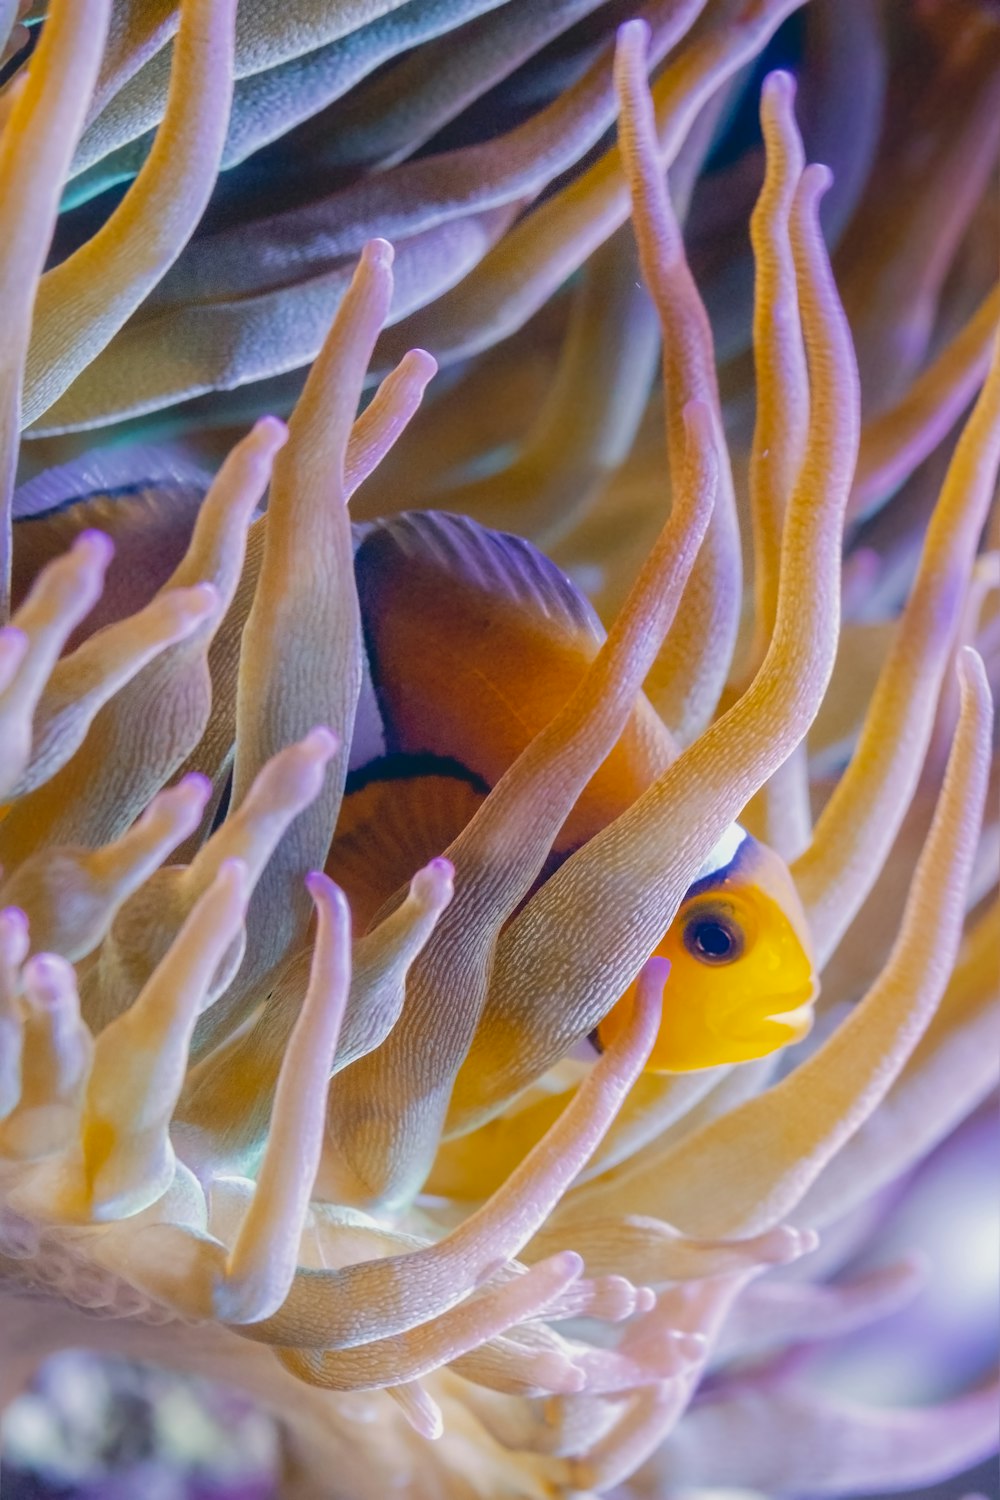 a clown fish hiding in a sea anemone